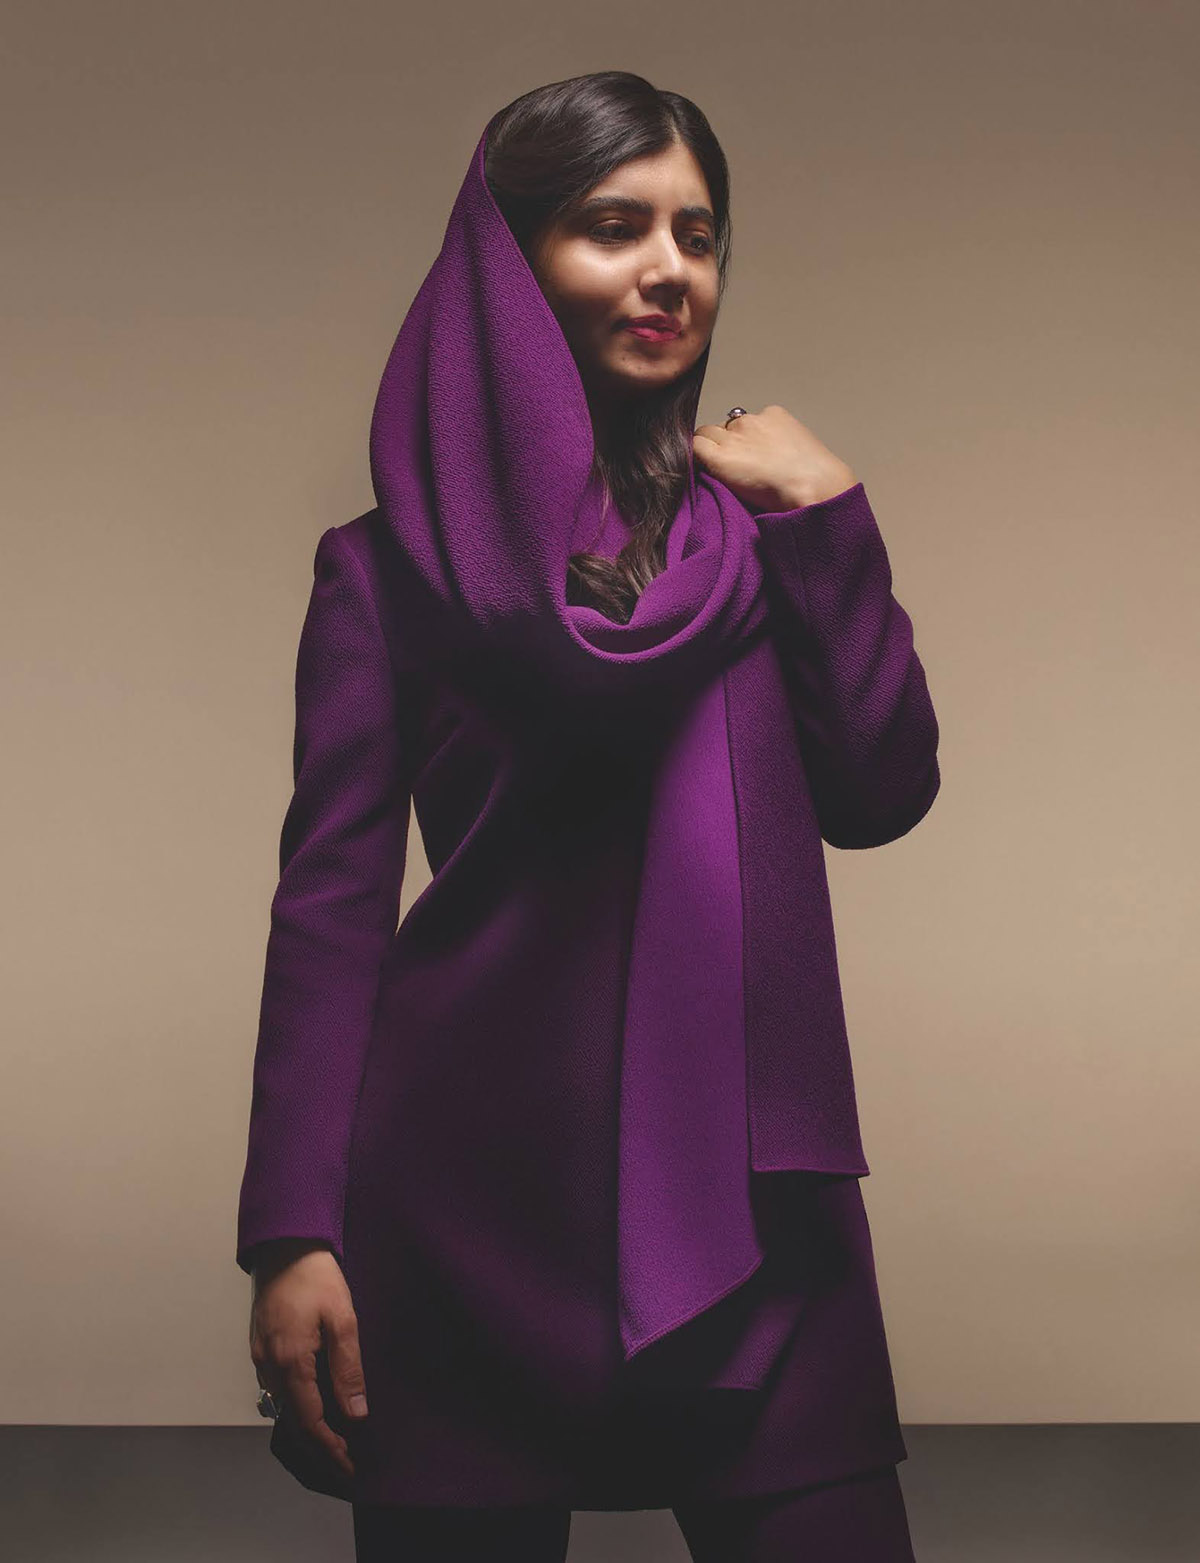 Malala covers British Vogue July 2021 by Nick Knight